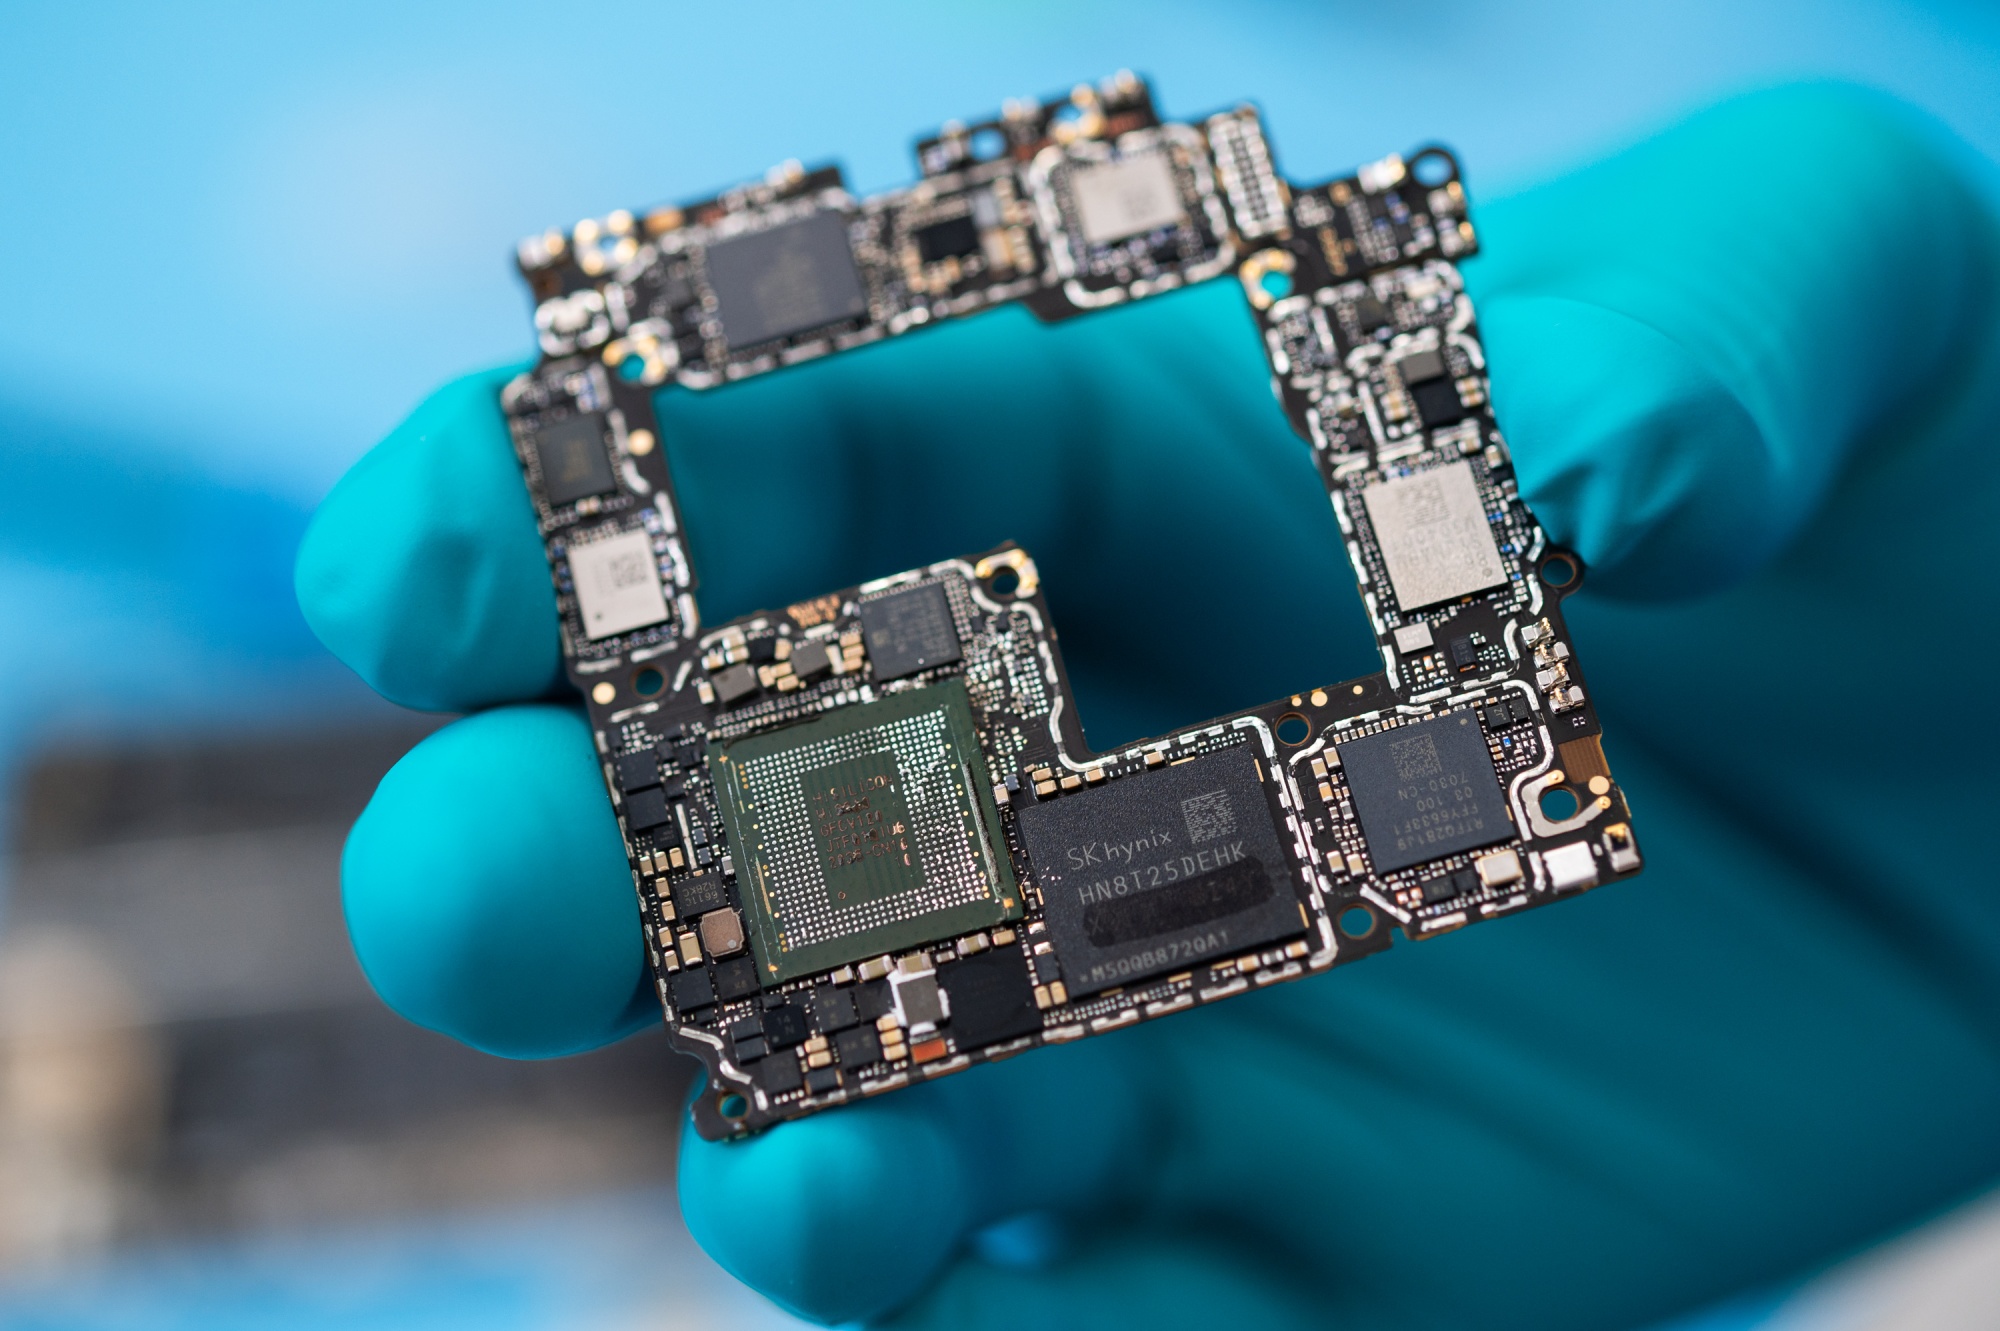 Le autorità statunitensi sono sicure delle basse prestazioni dei nuovi processori a 7 nm di Huawei